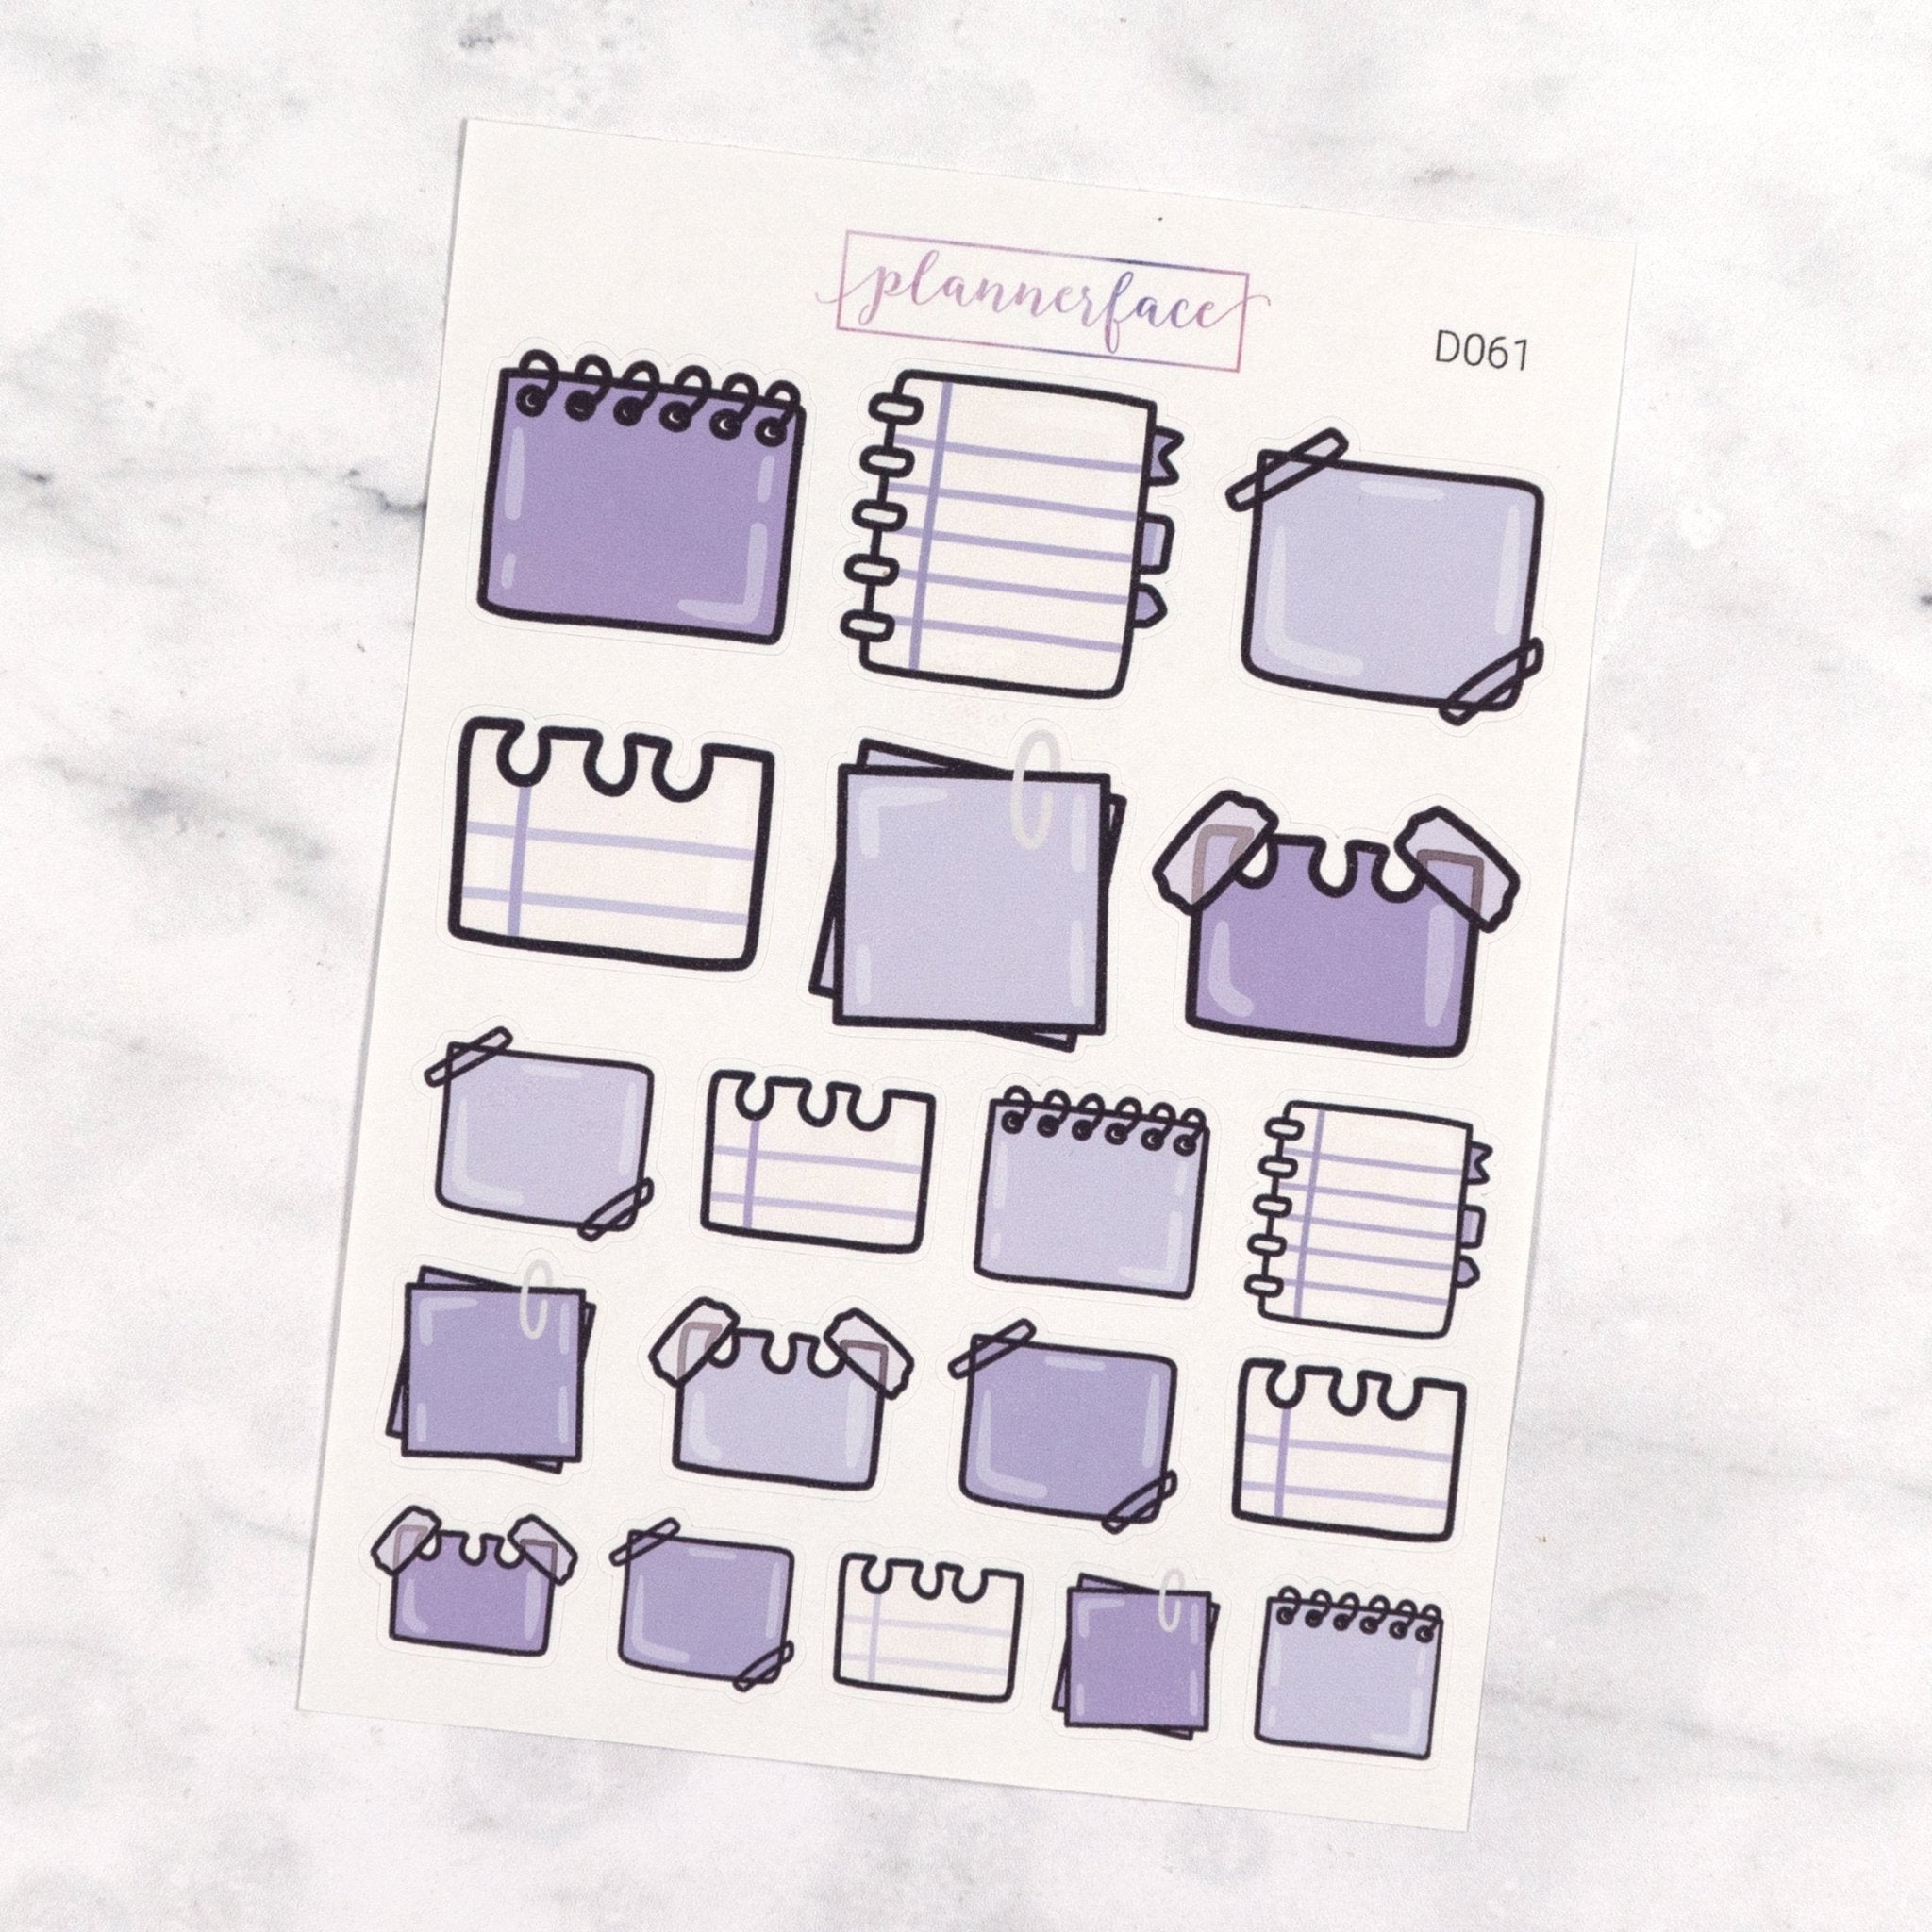 Purple Note Paper Multicolour Doodles by Plannerface